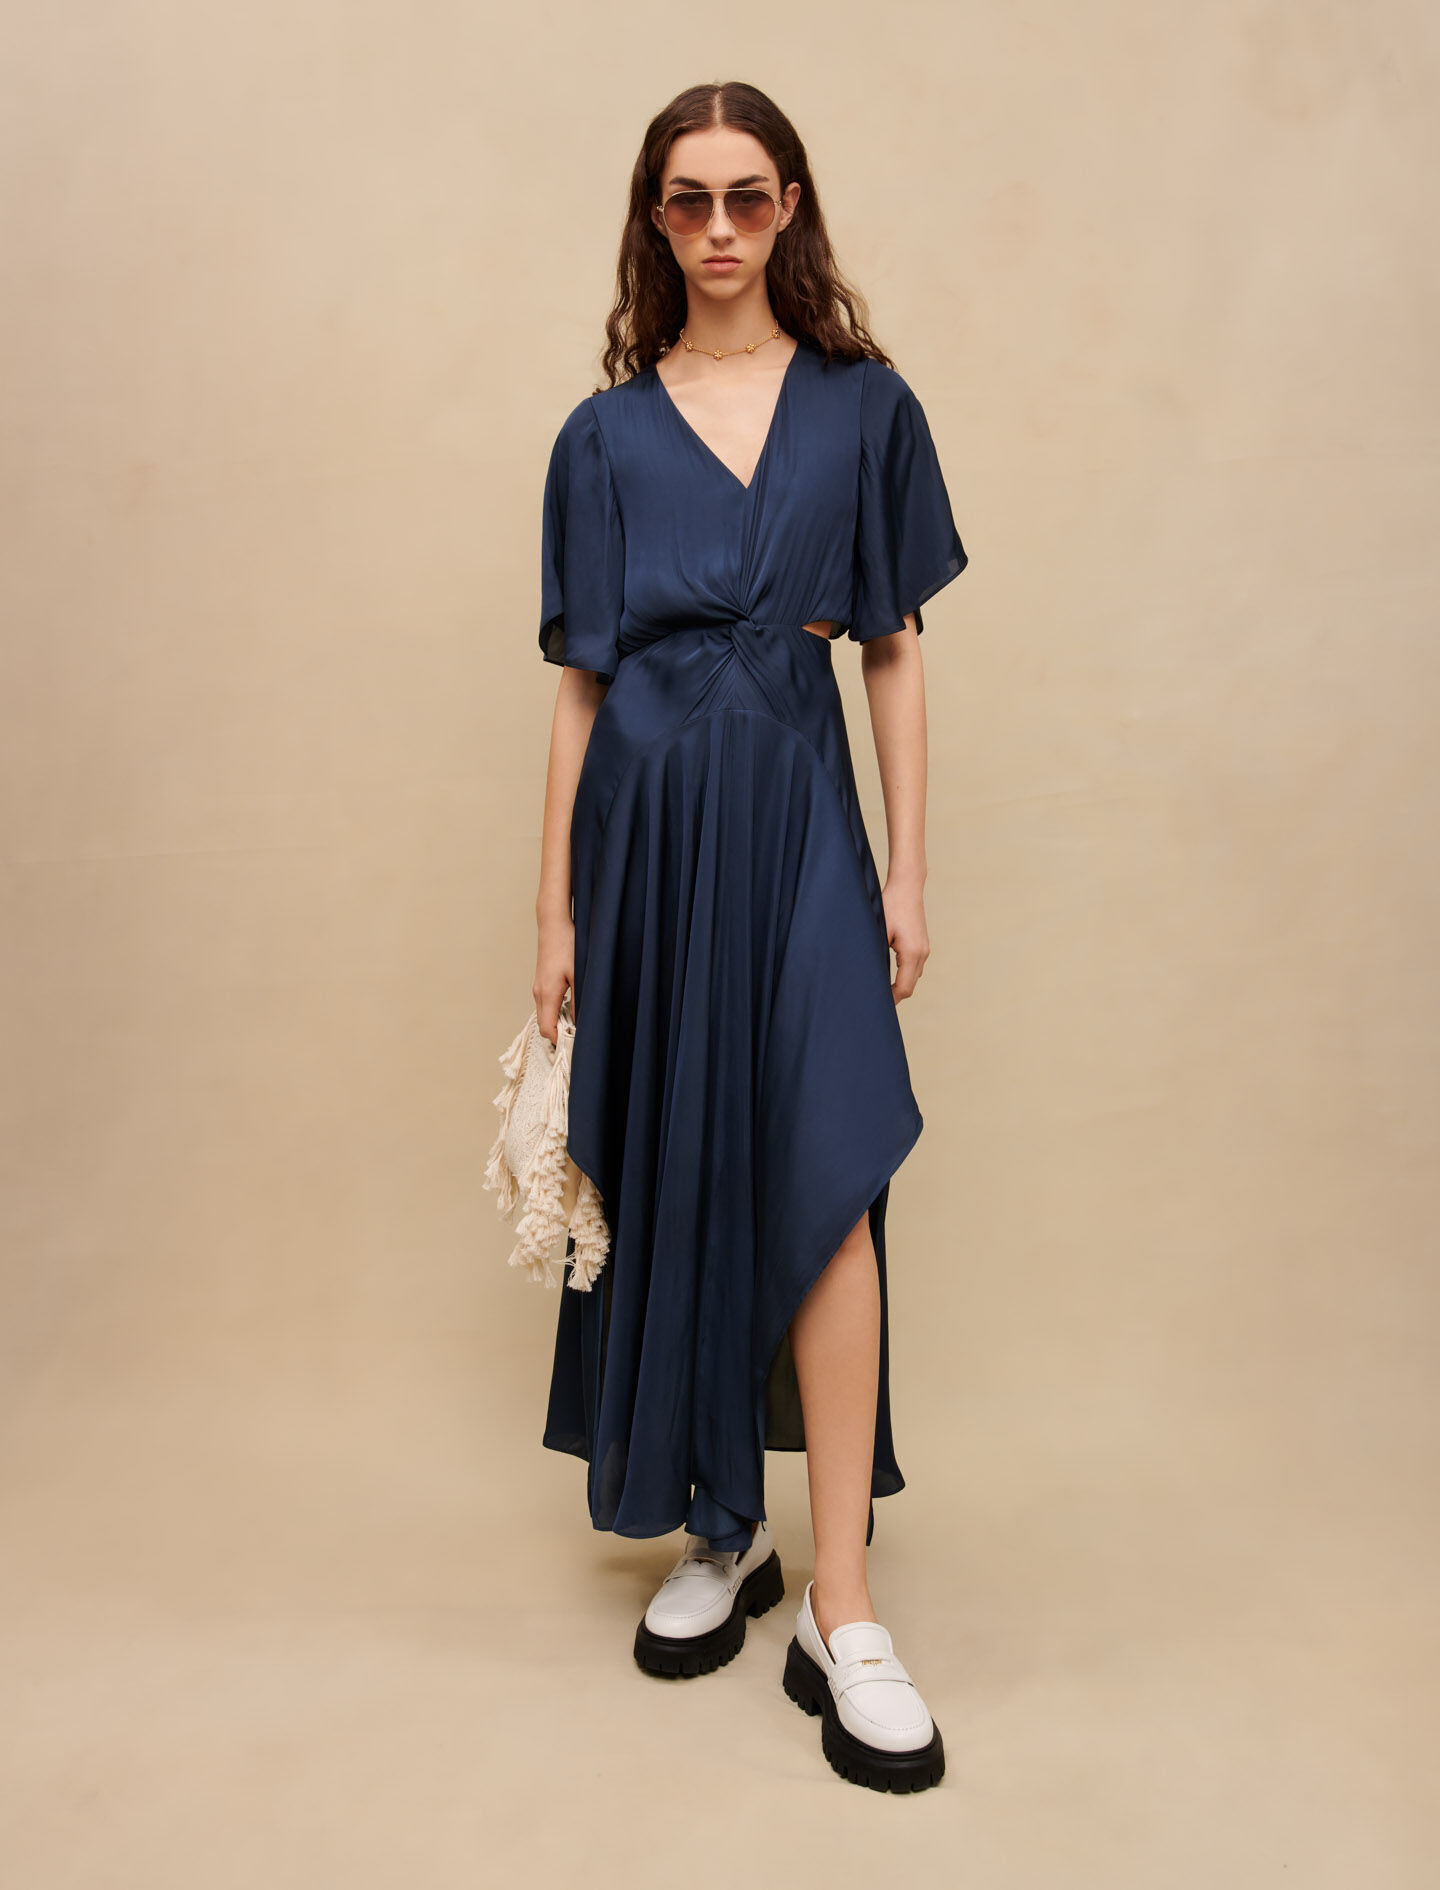 Dresses - Women Clothing | Maje.com